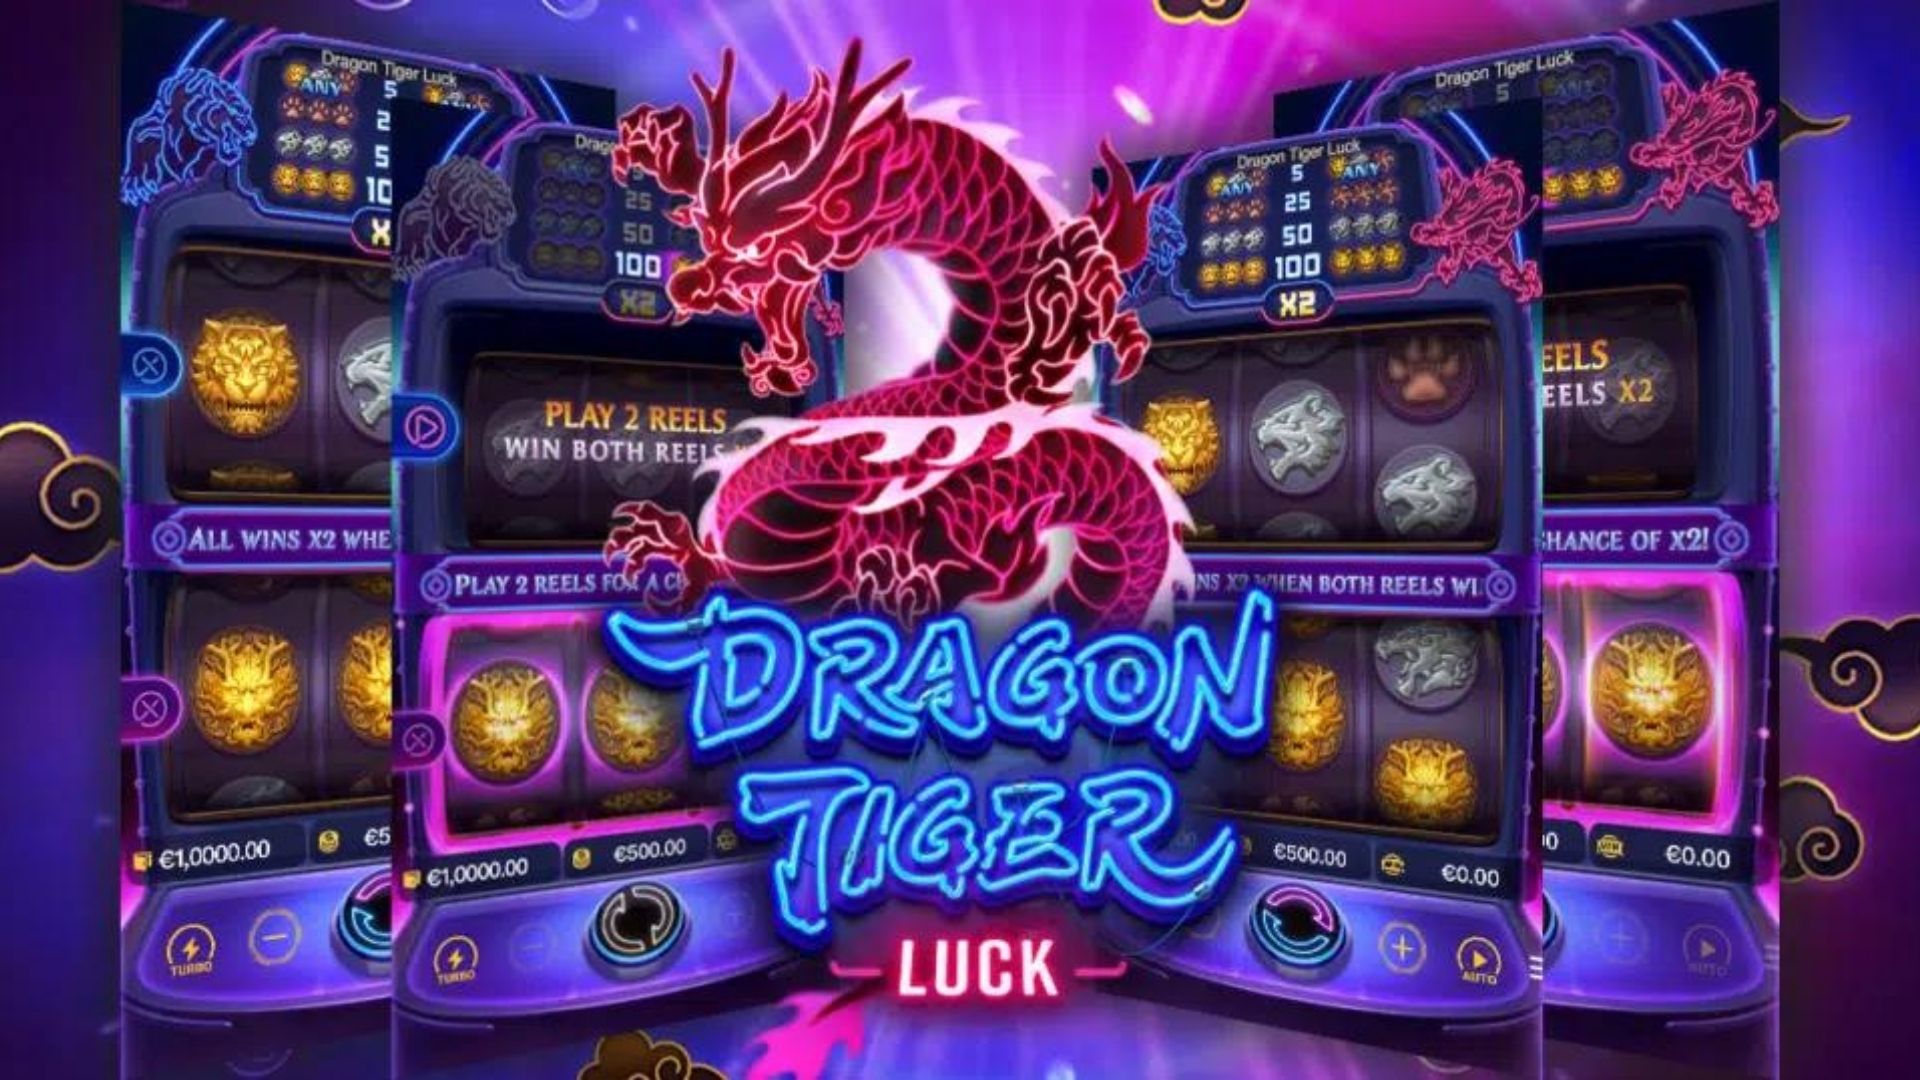 slot gacor dragon tiger luck